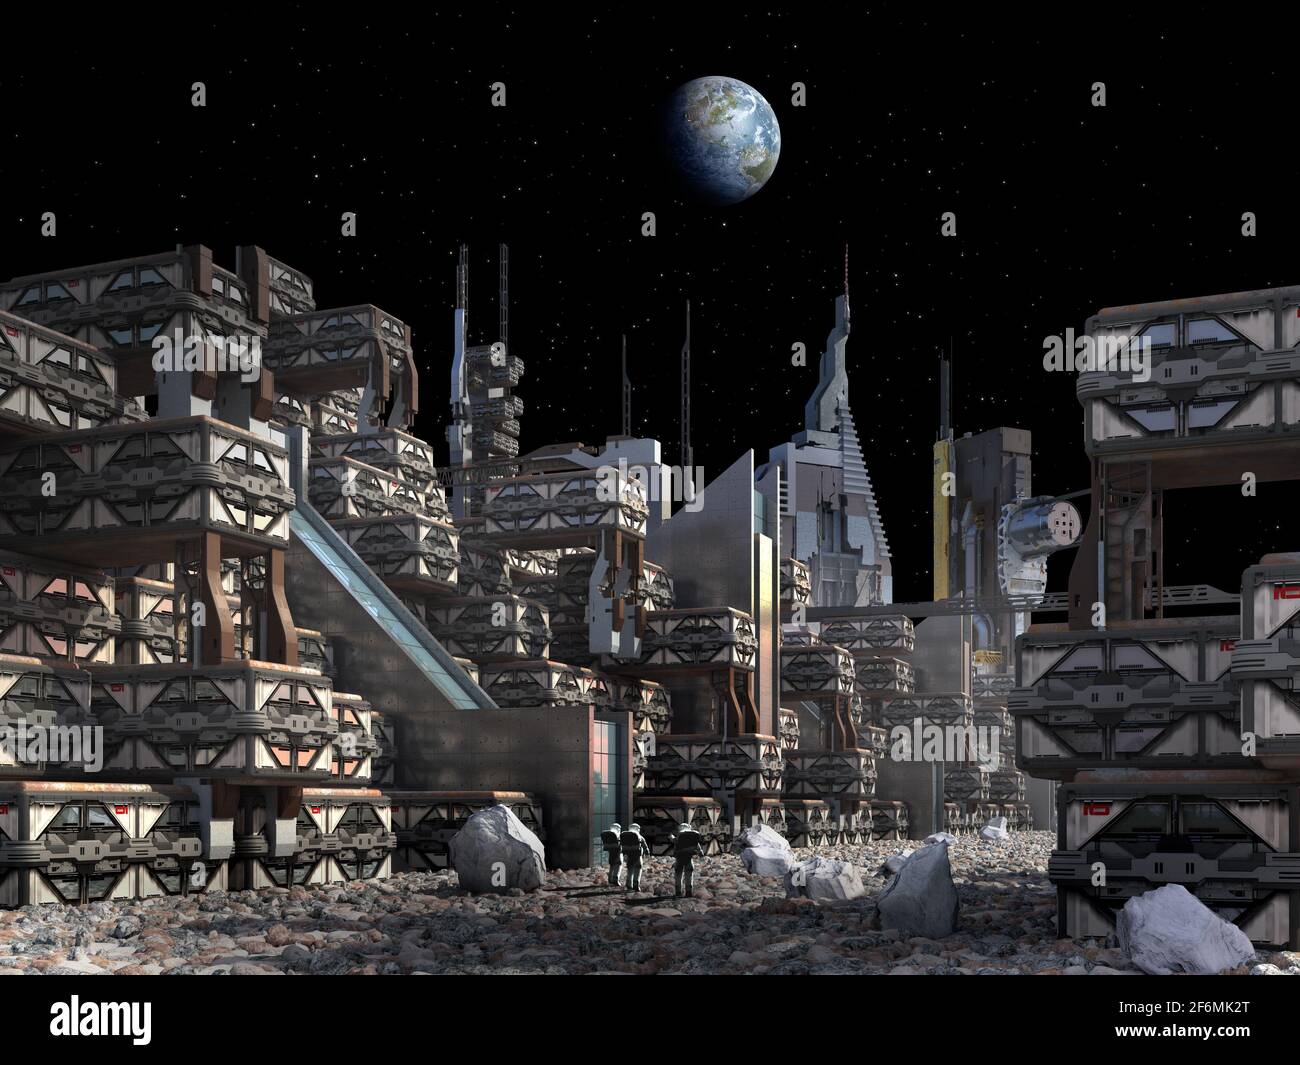 Illustrazione in 3D di una colonia sulla Luna con astronauti vicino a grattacieli e industriale, modulare, architettura, per fantascienza o esplorati spaziali Foto Stock